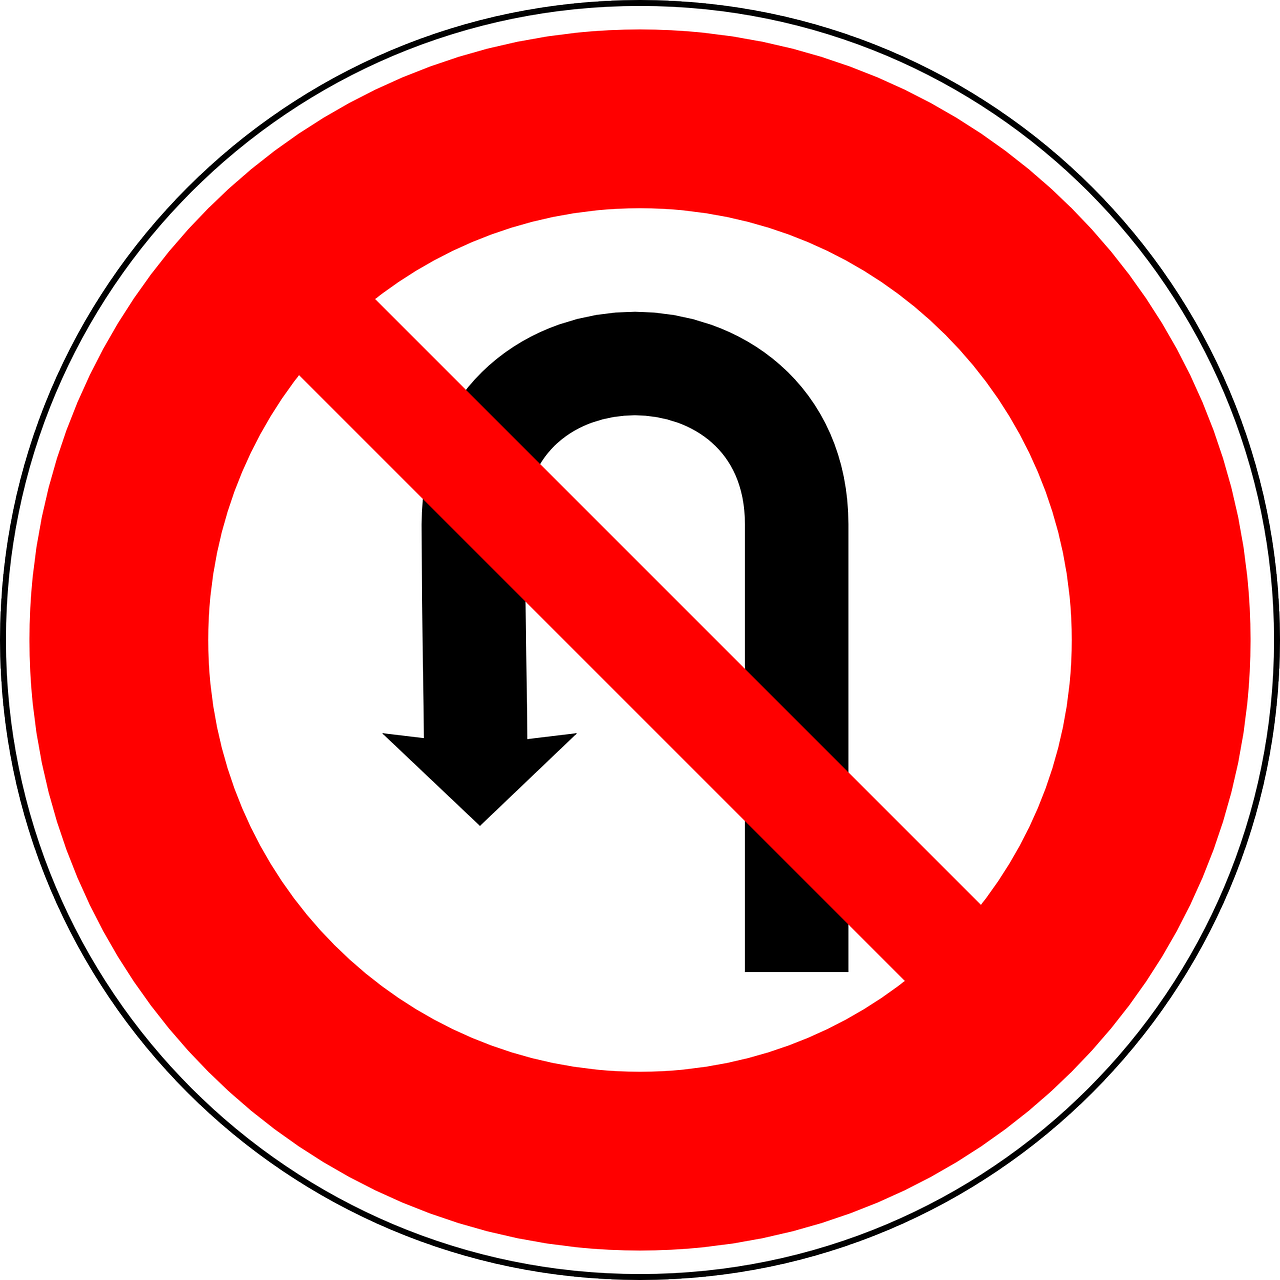 ターン禁止の道路標識